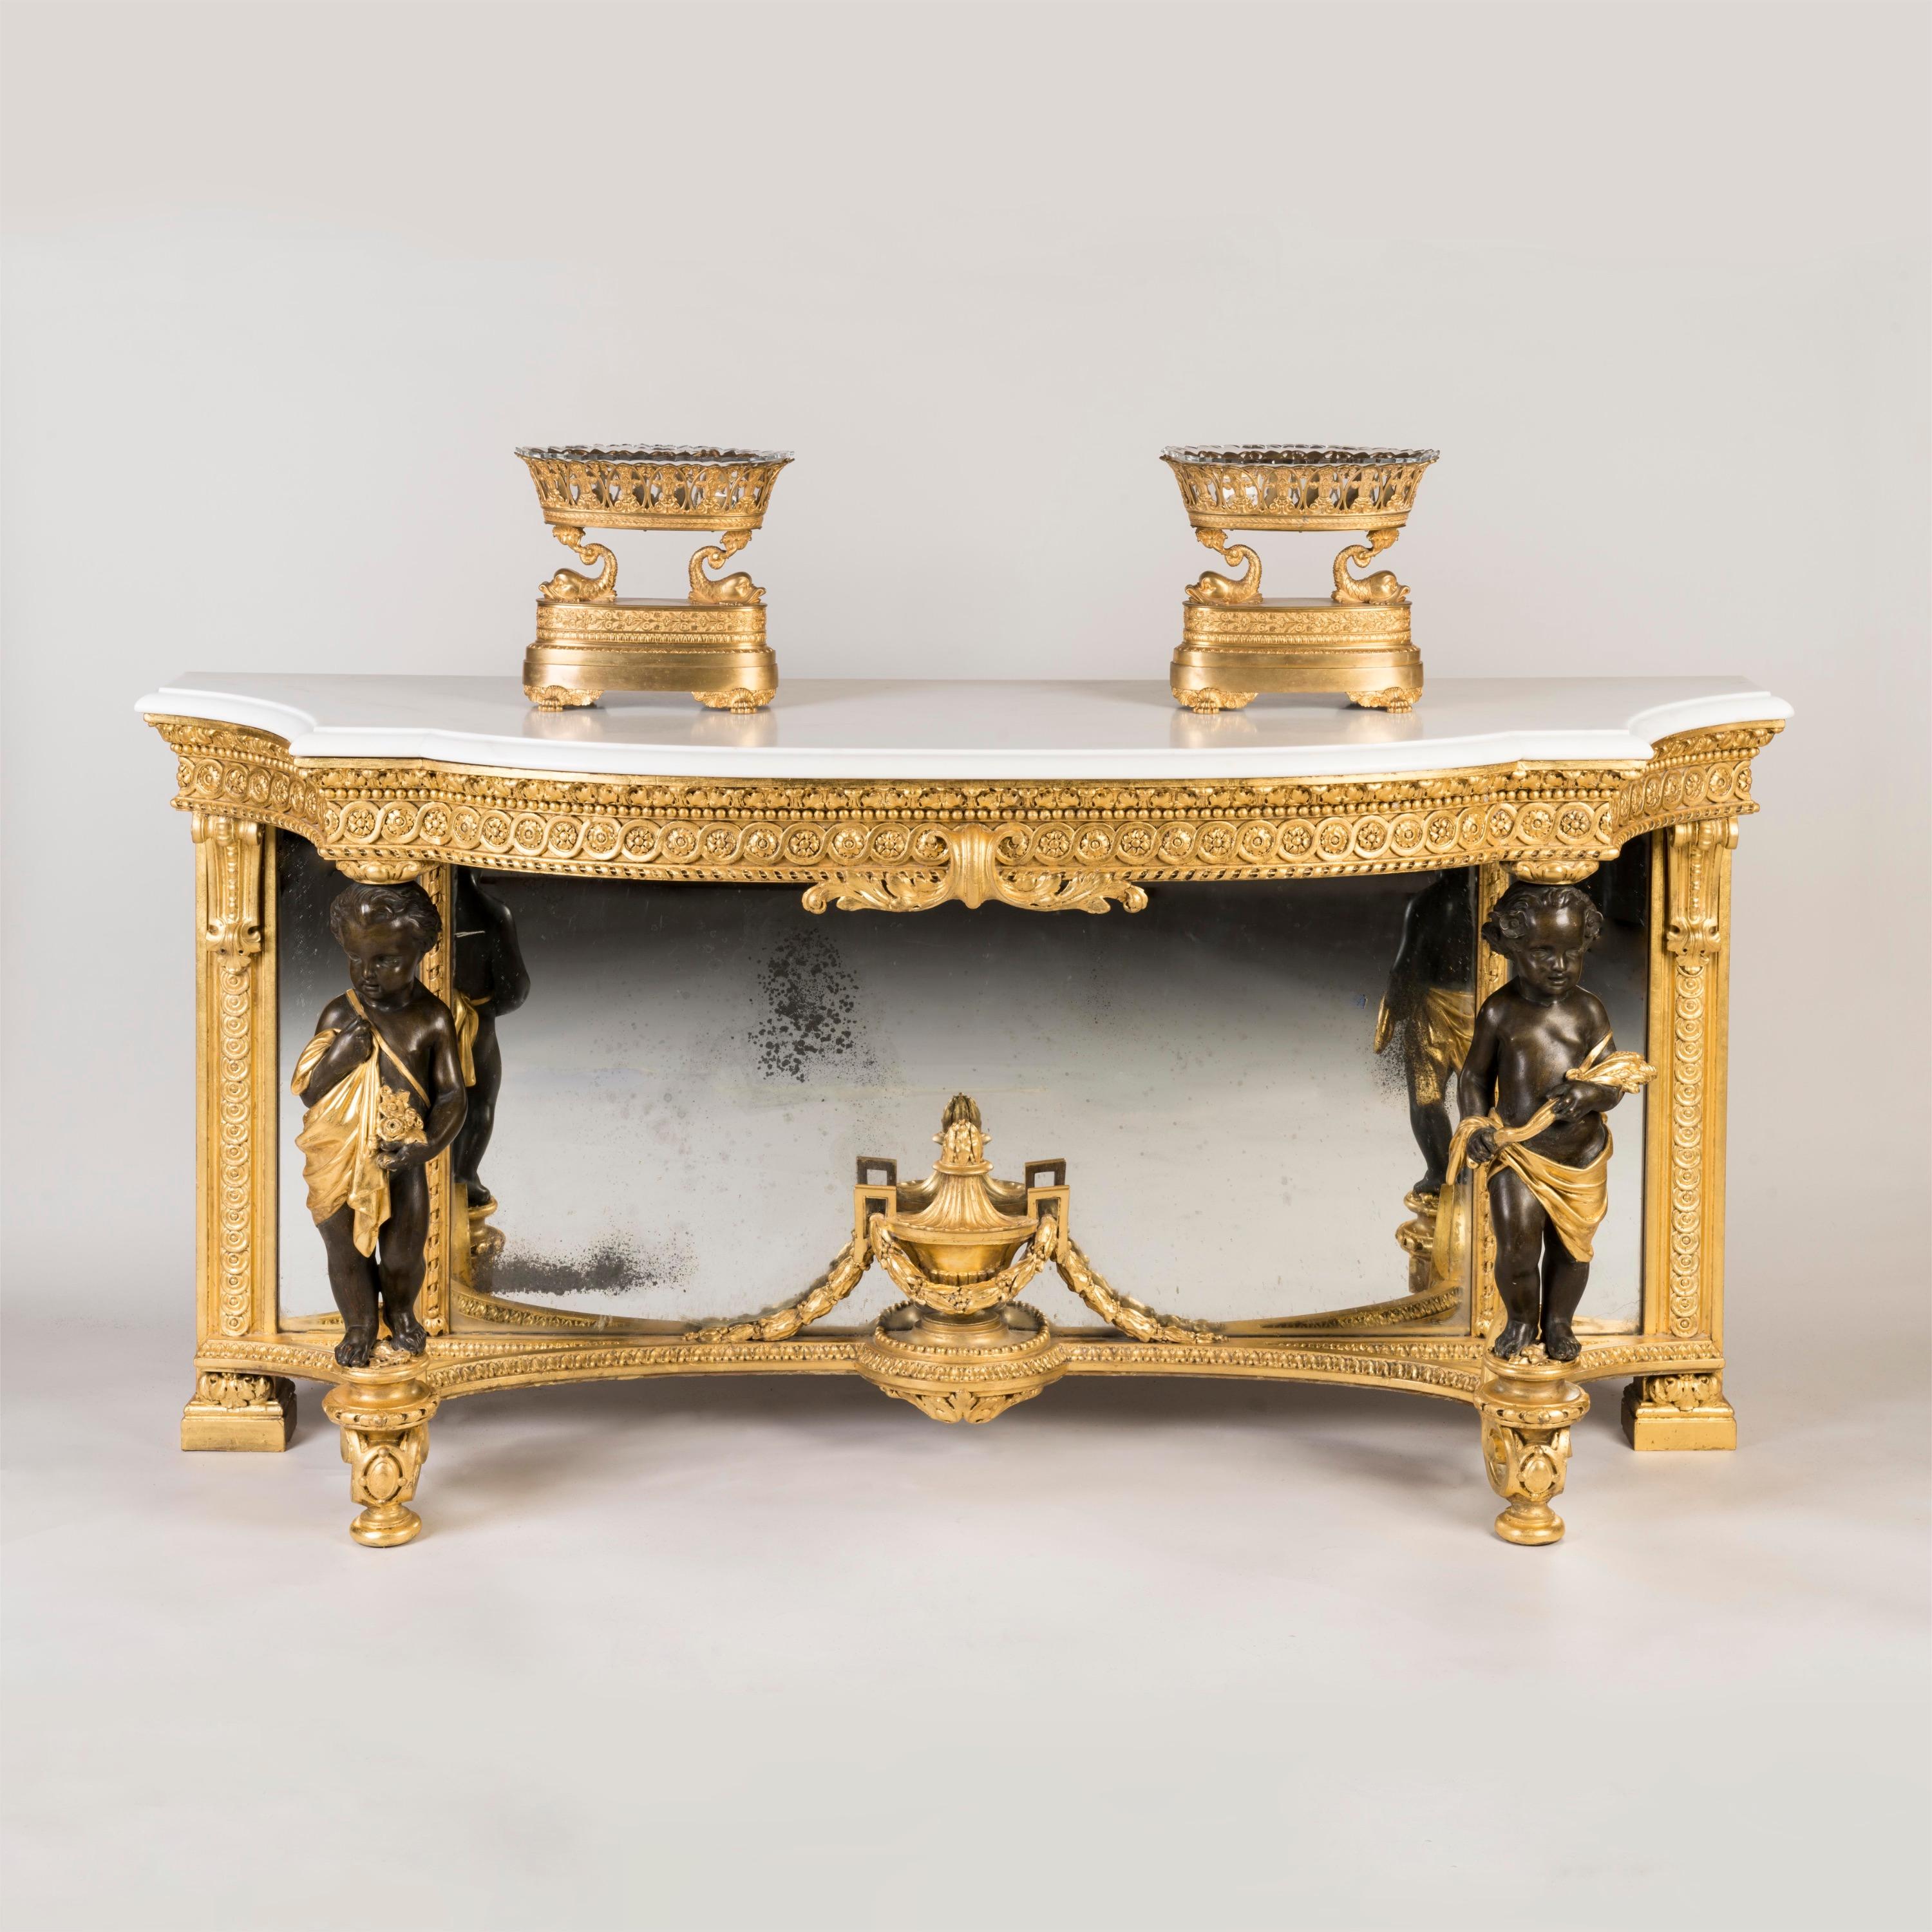 Ein guter Konsolentisch im Louis XVI-Stil

Vergoldetes Holz, mit dekorativen Akzenten; in Form einer Arkade, die Plattform aus weißem Carrara hat einen mit Daumennägeln verzierten Rand und wird von zwei drapierten Putten getragen, von denen eine